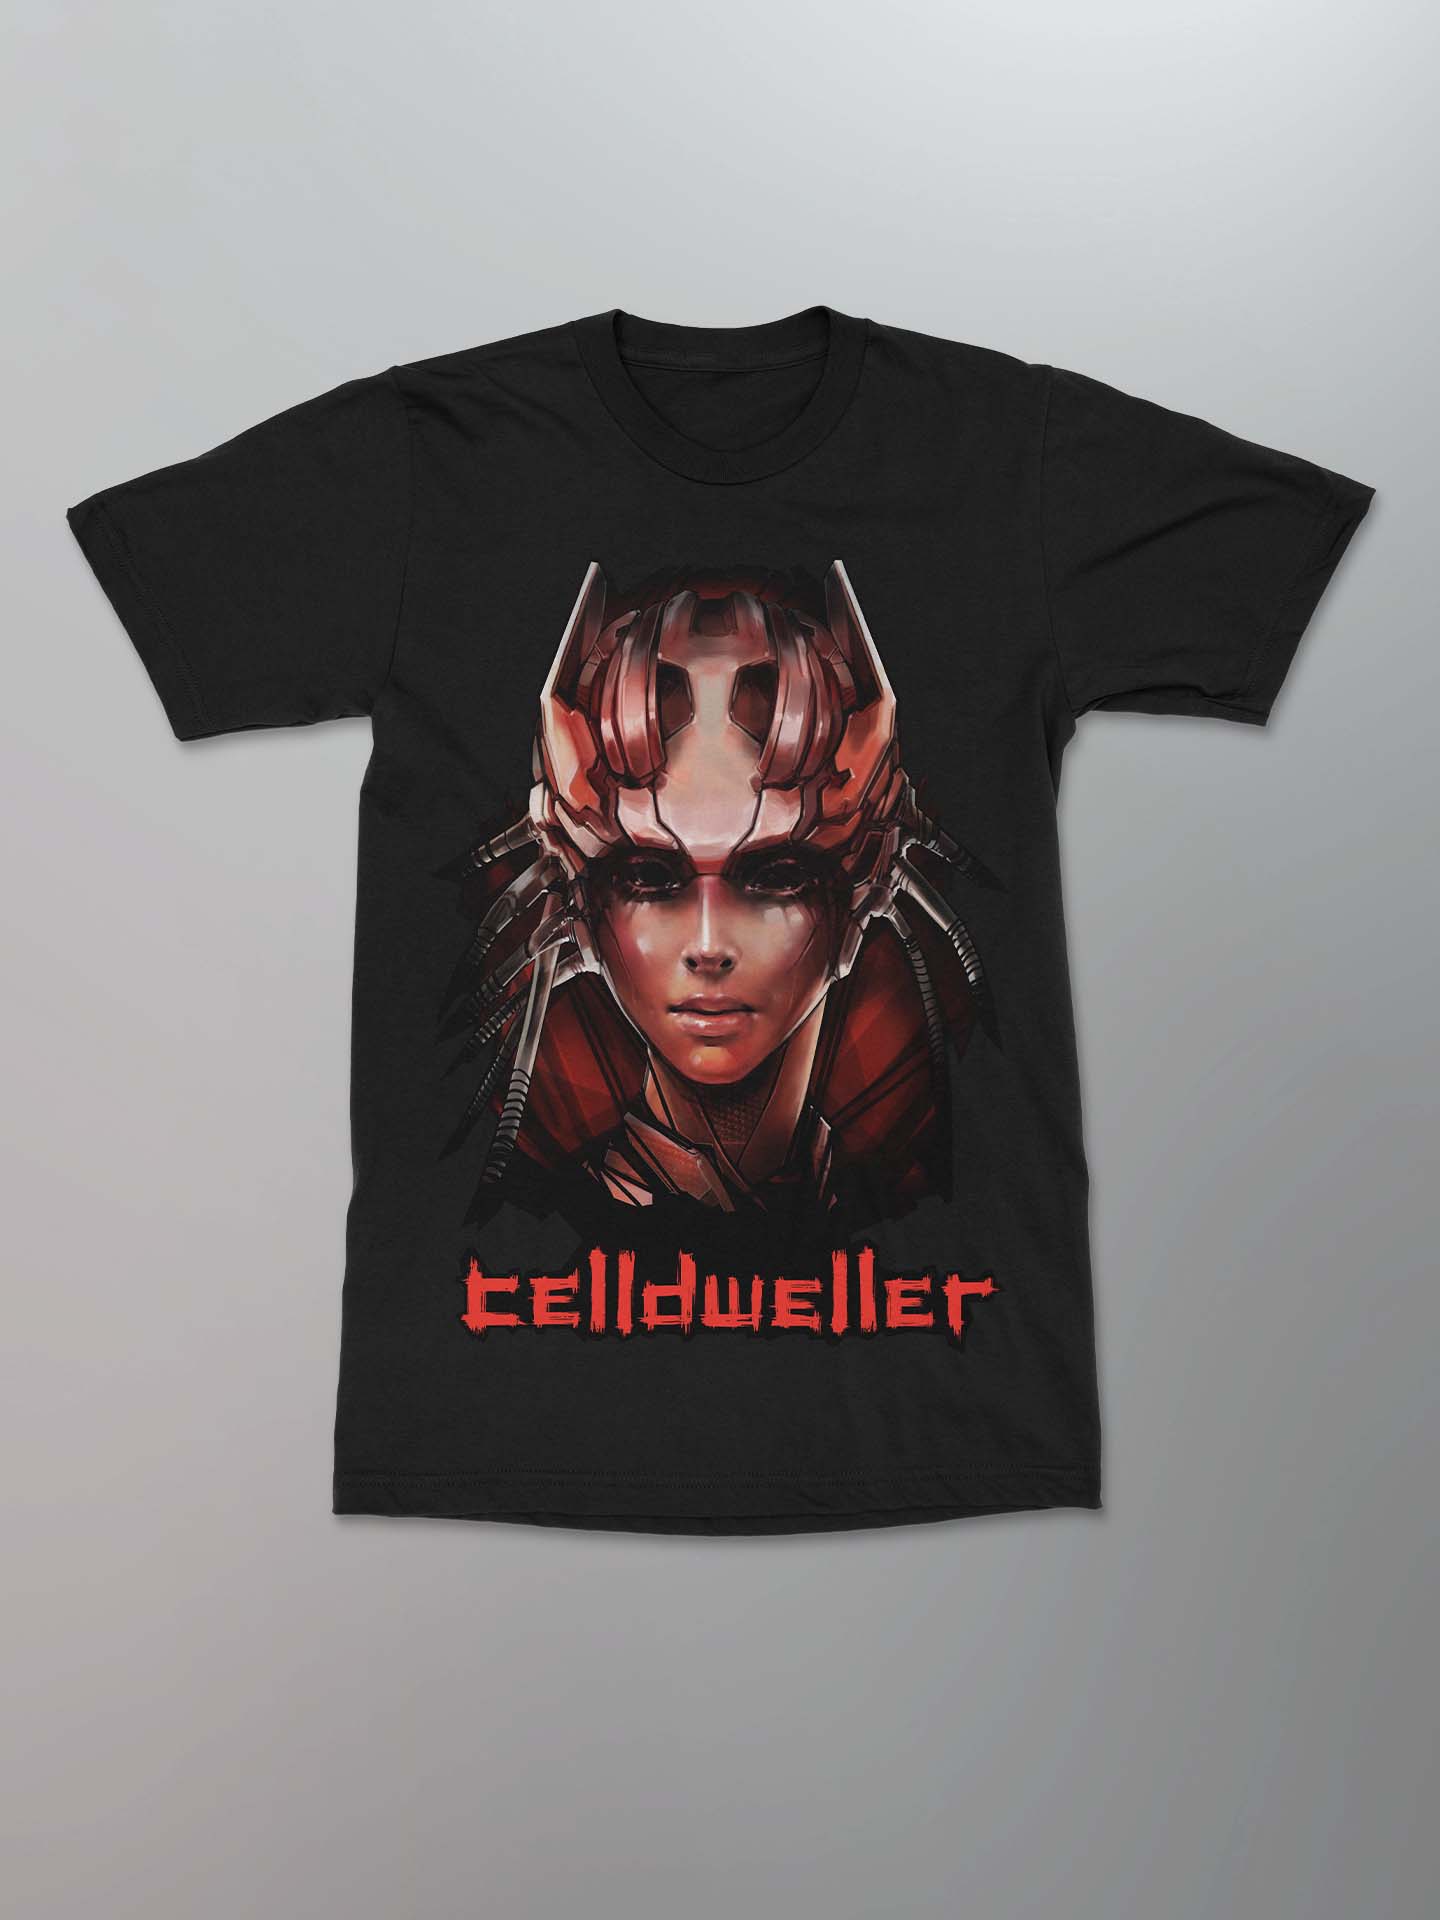 Celldweller - Siren Shirt